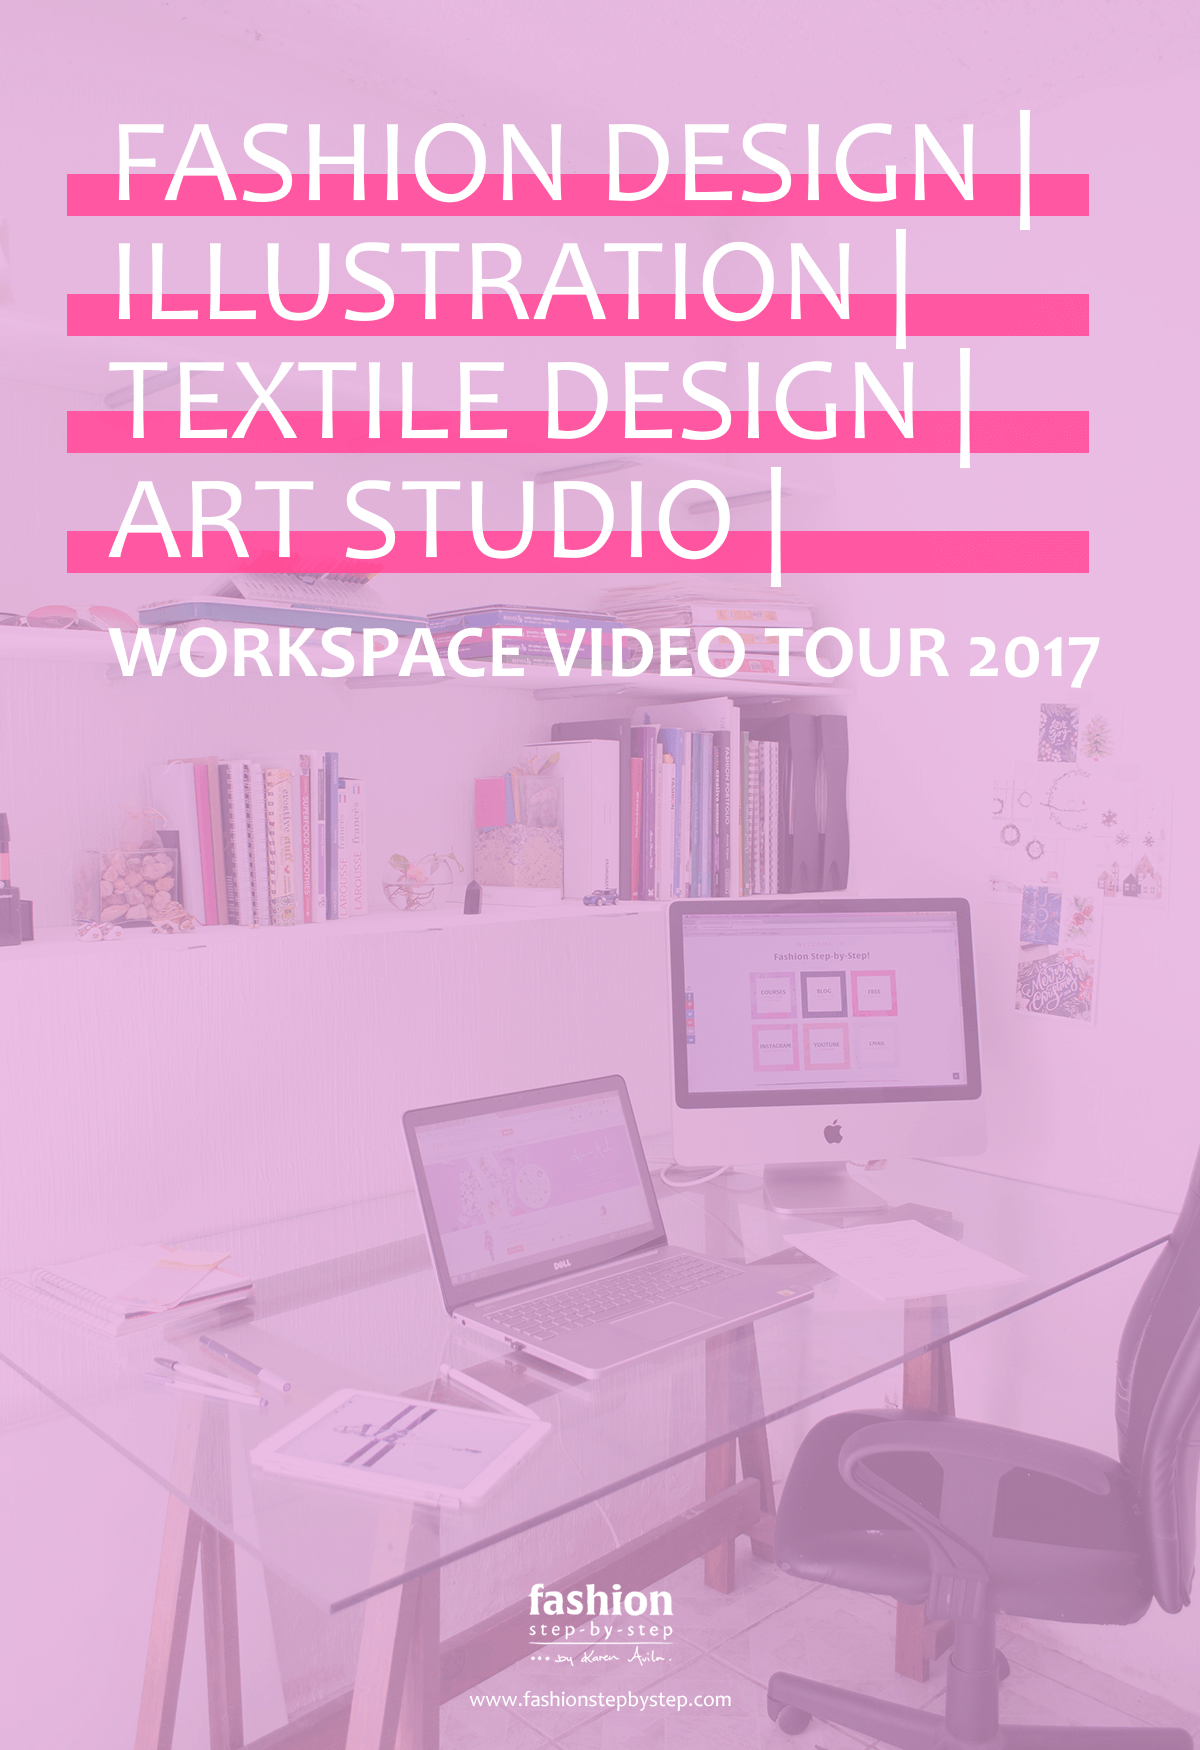 Fashion Design Studio Workspaces Video Troy Yochem